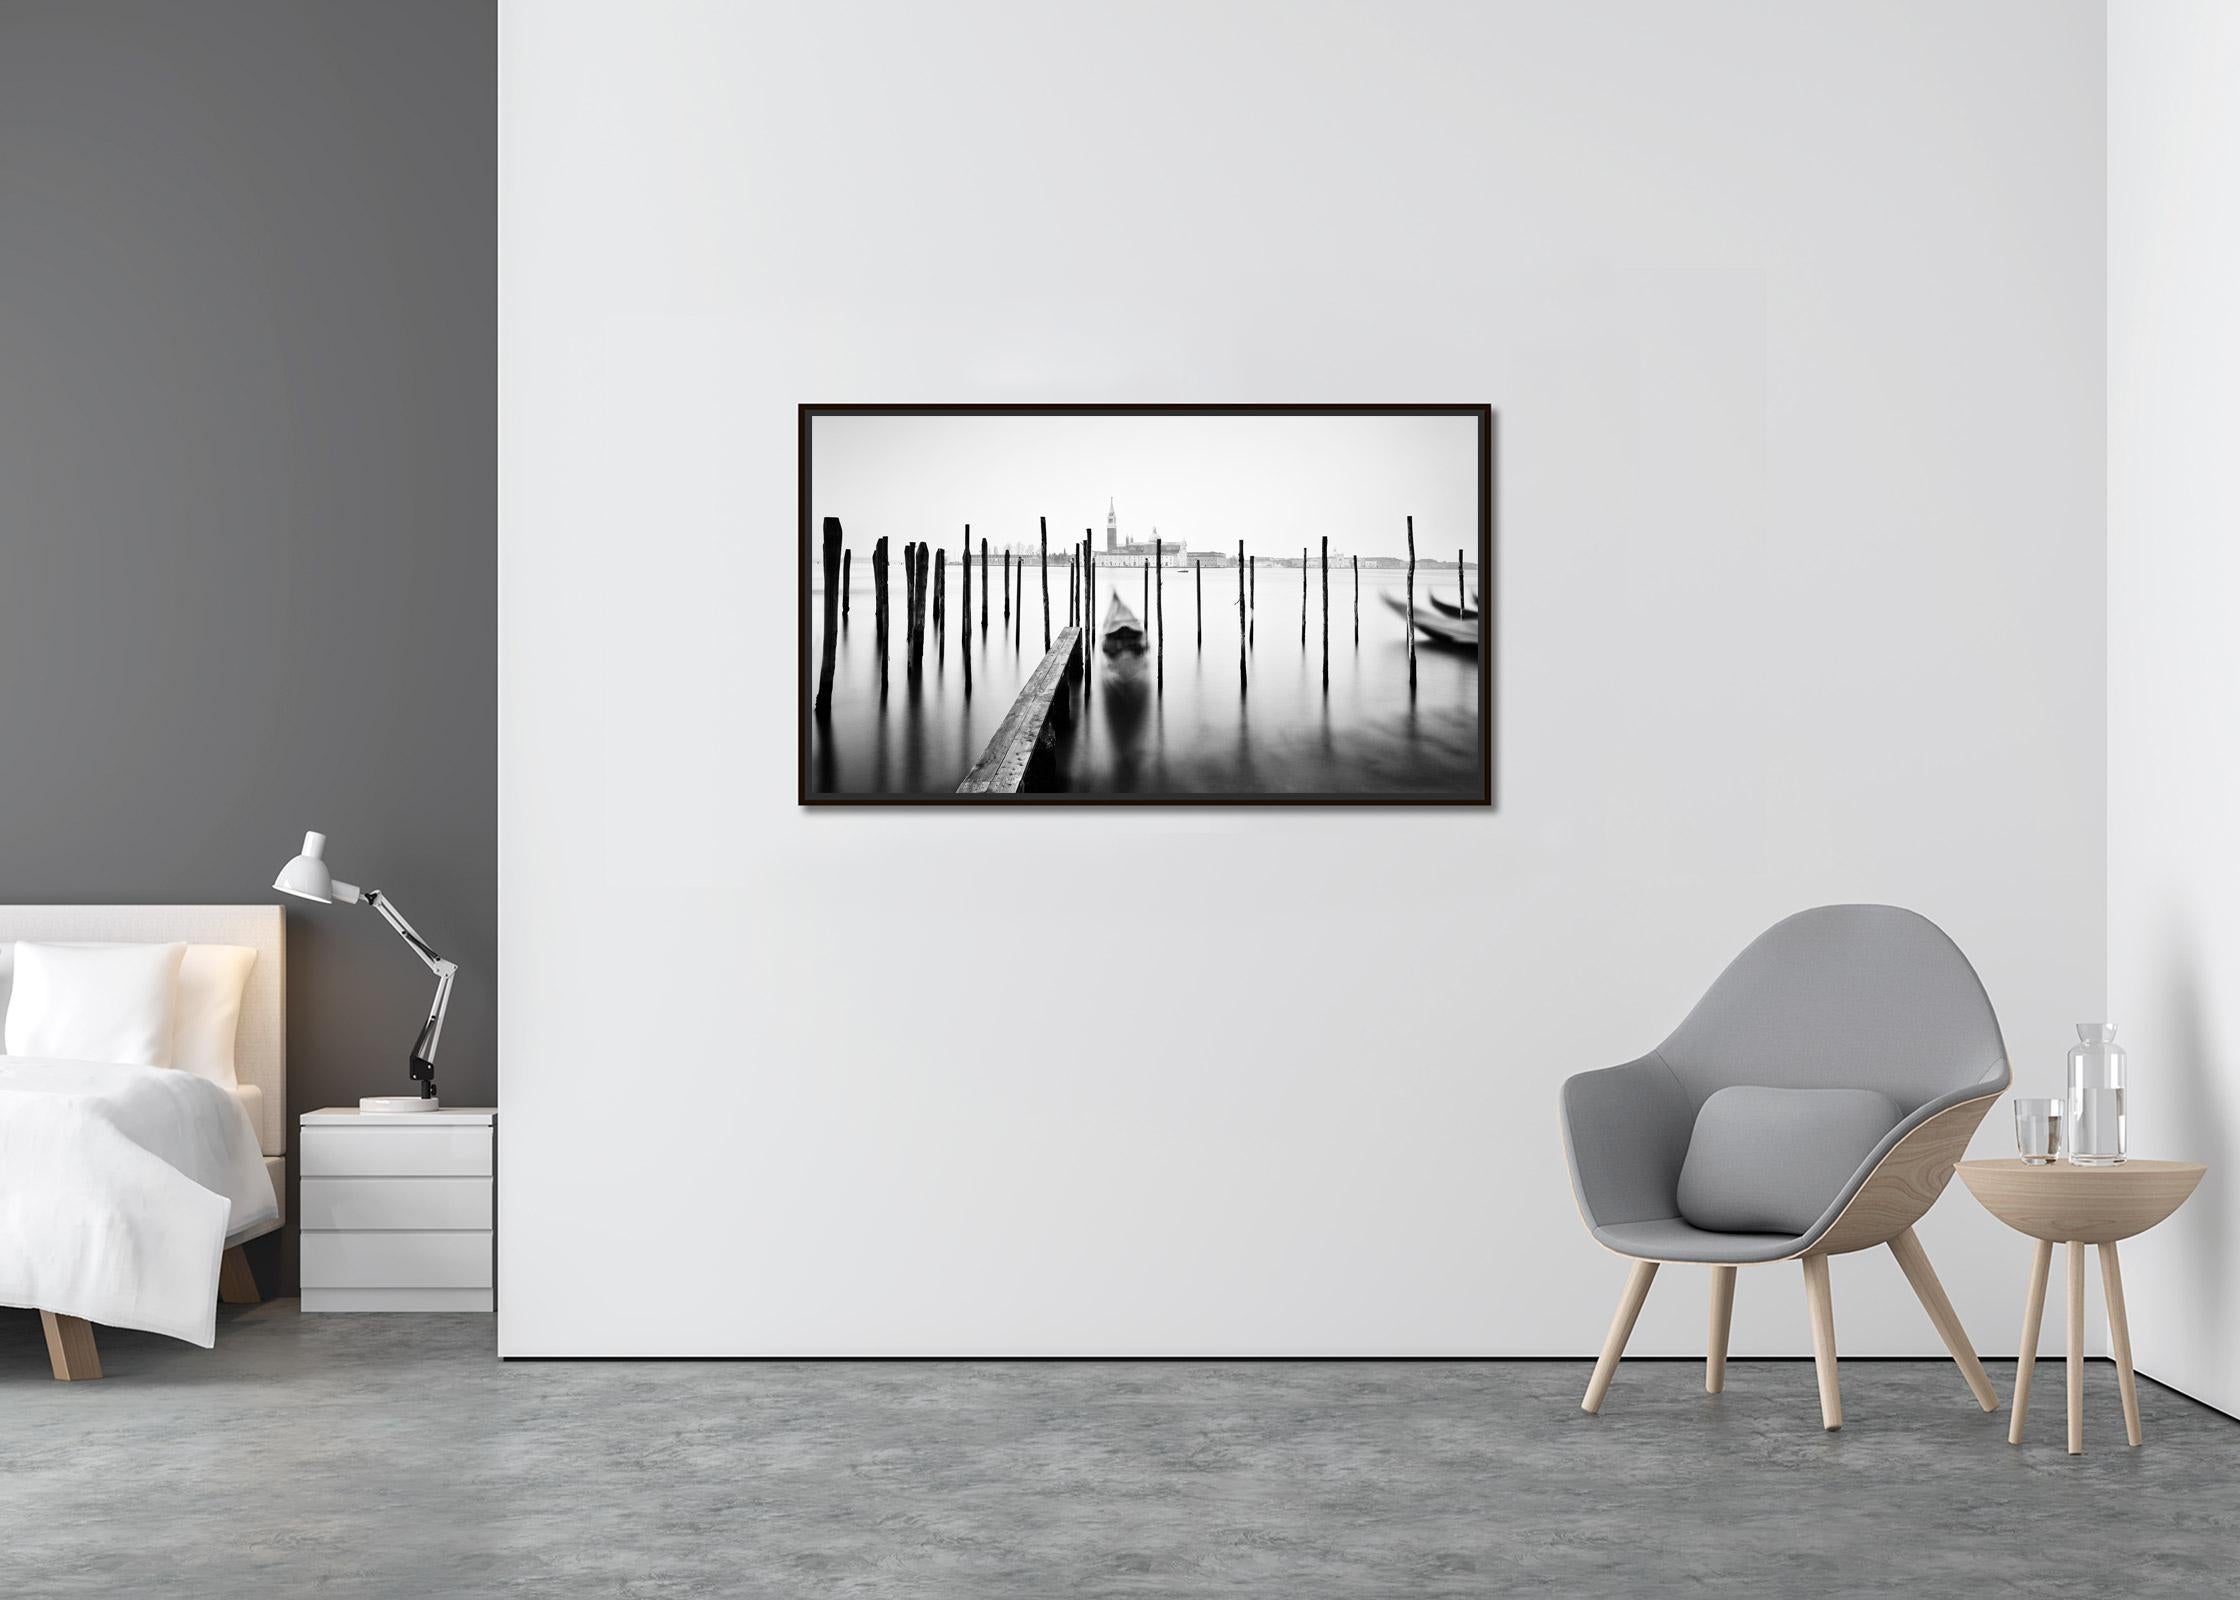 Basilica and Gondola, Venedig, Schwarz-Weiß-Fotografie mit Langzeitbelichtungsbelichtung, bildende Kunst (Zeitgenössisch), Photograph, von Gerald Berghammer